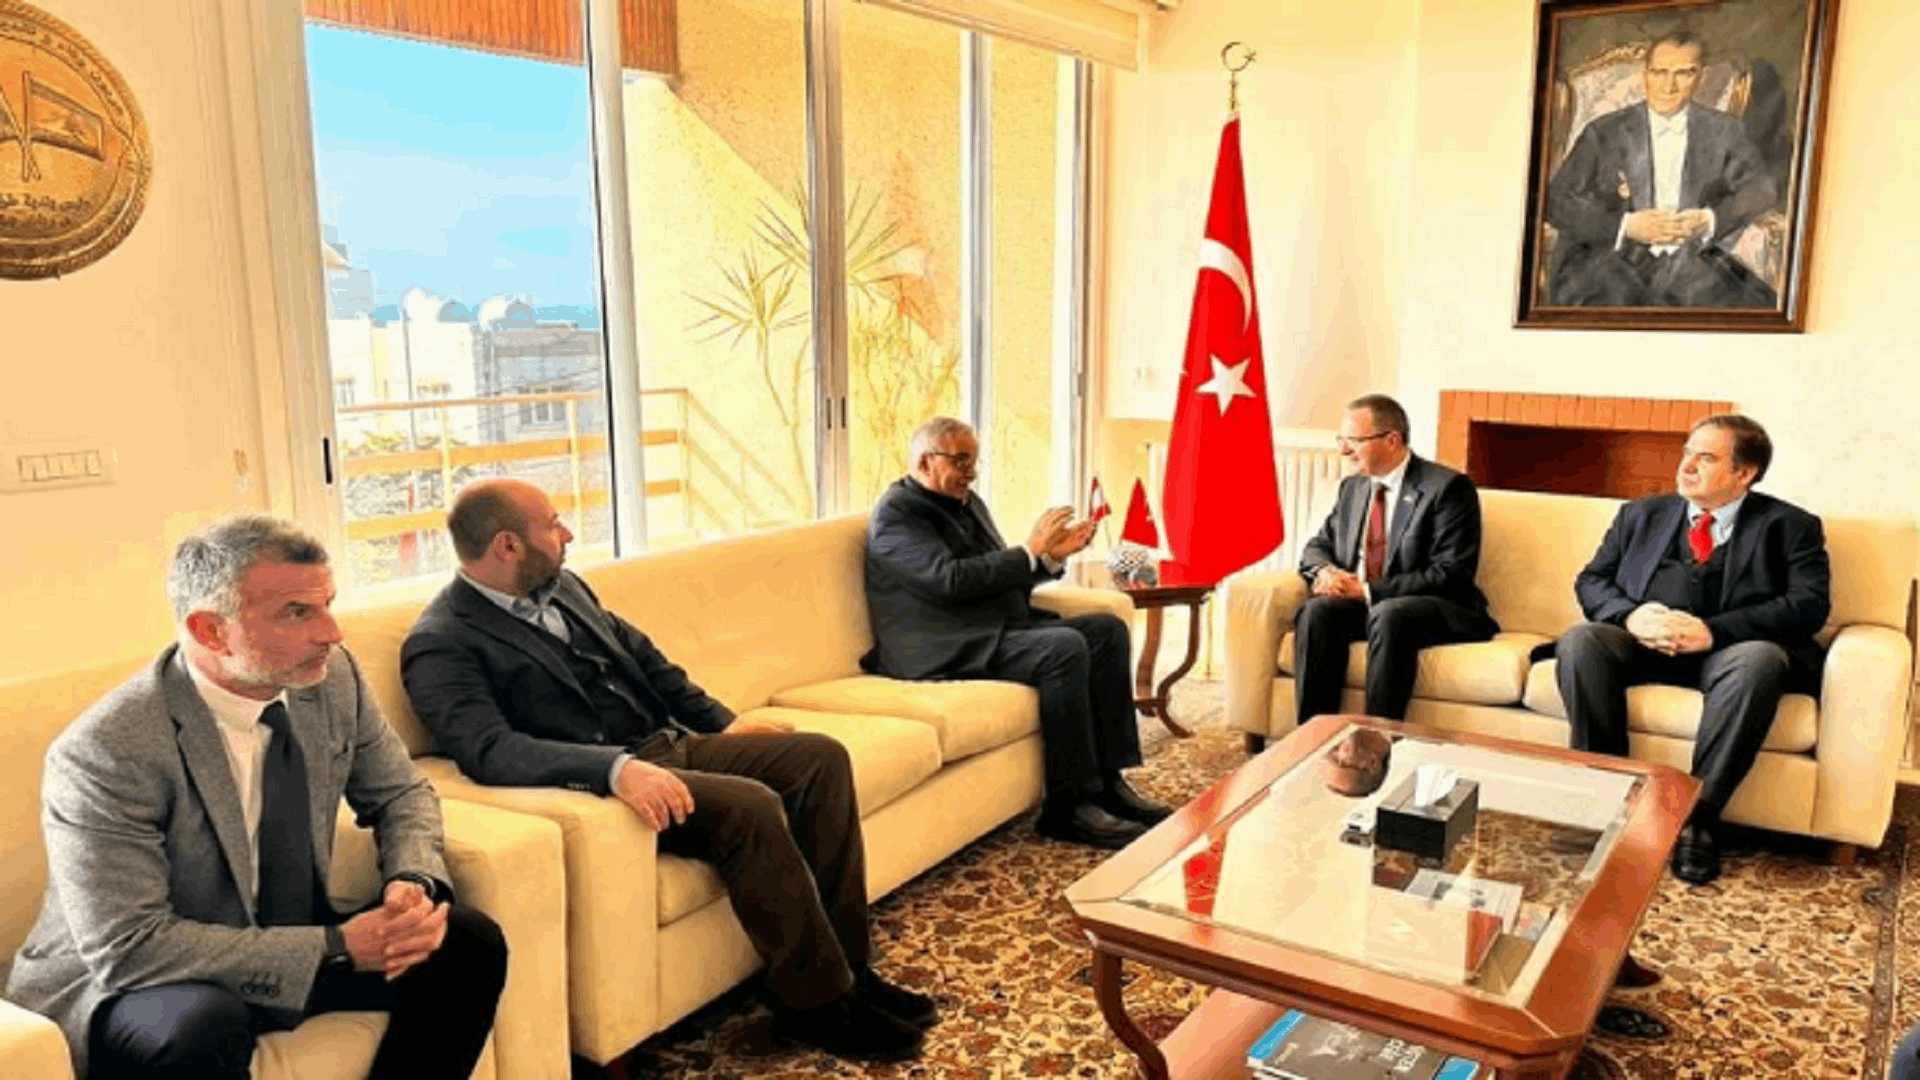 بو حبيب زار السفارة التركية معزيا وأكد دعم لبنان ضمن إمكاناته